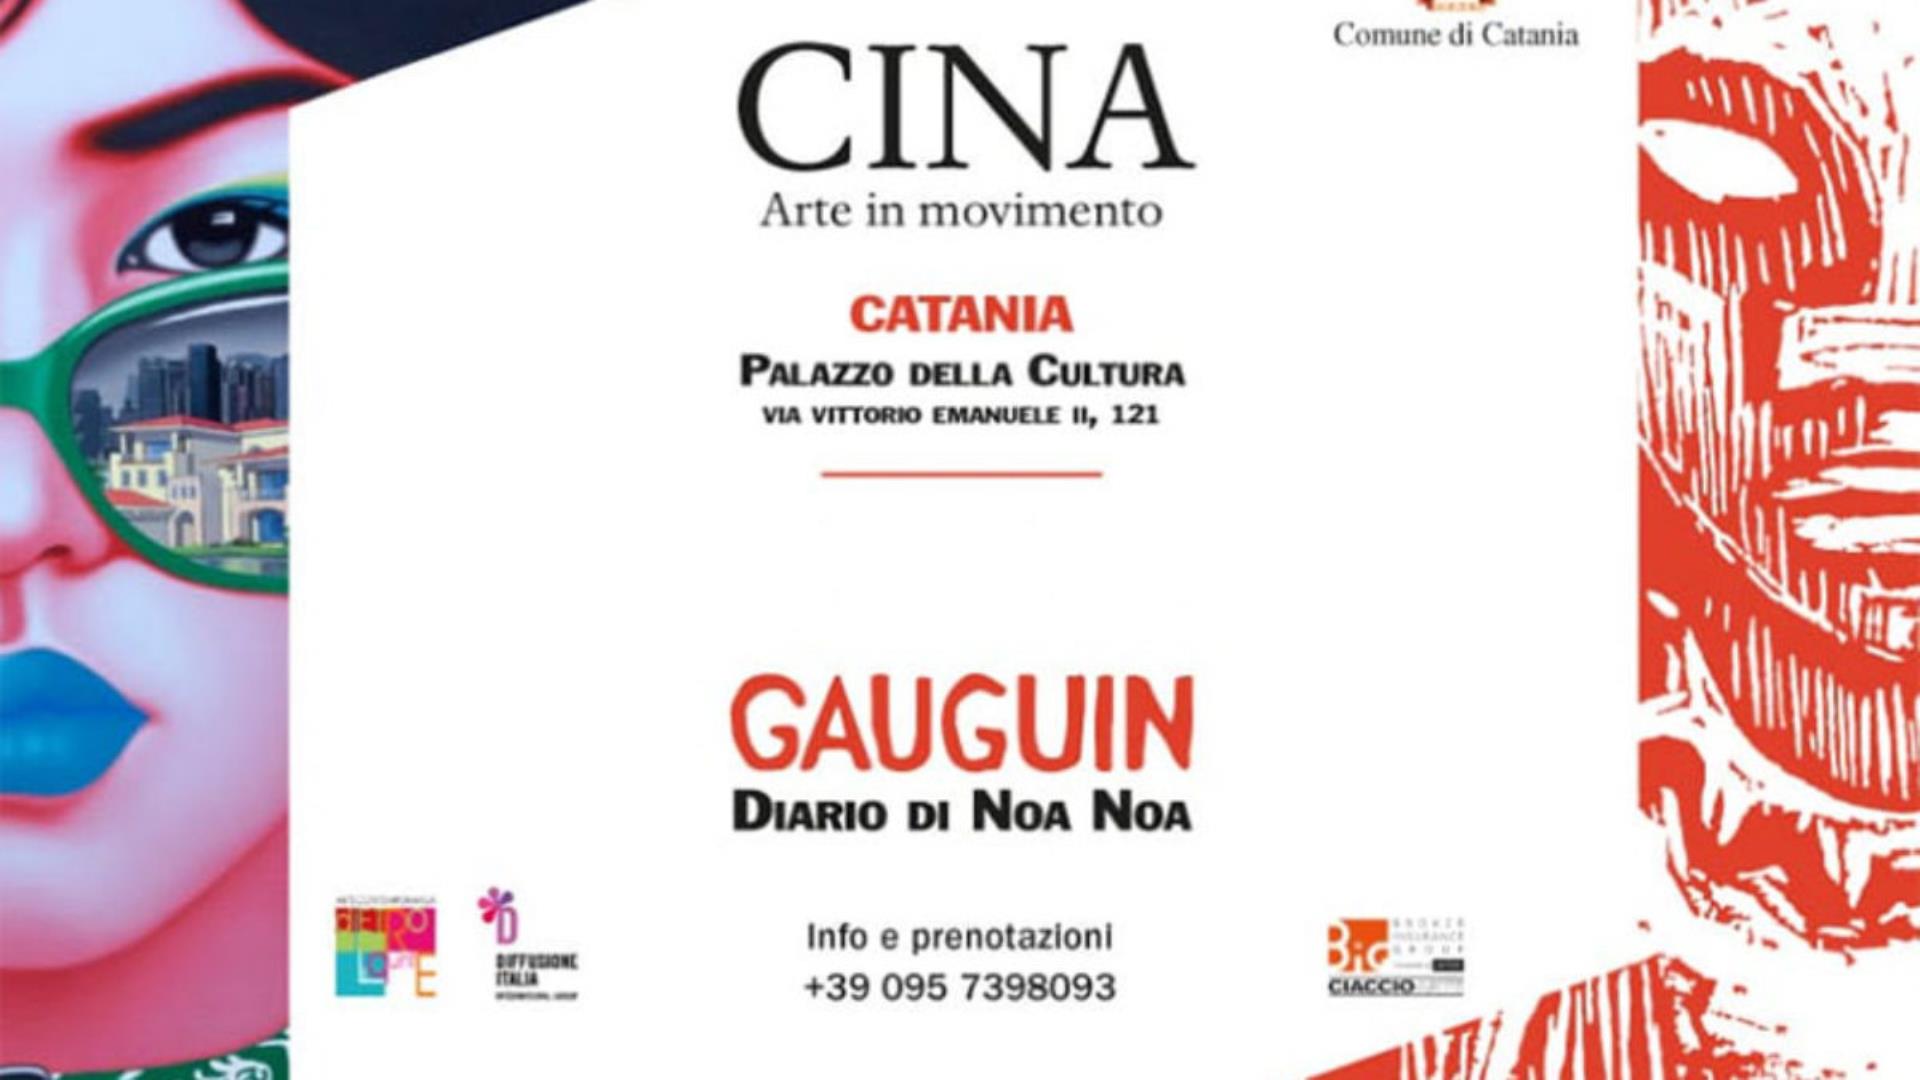 Cina - Arte in movimento" e "Gauguin - Diario di Noa Noa